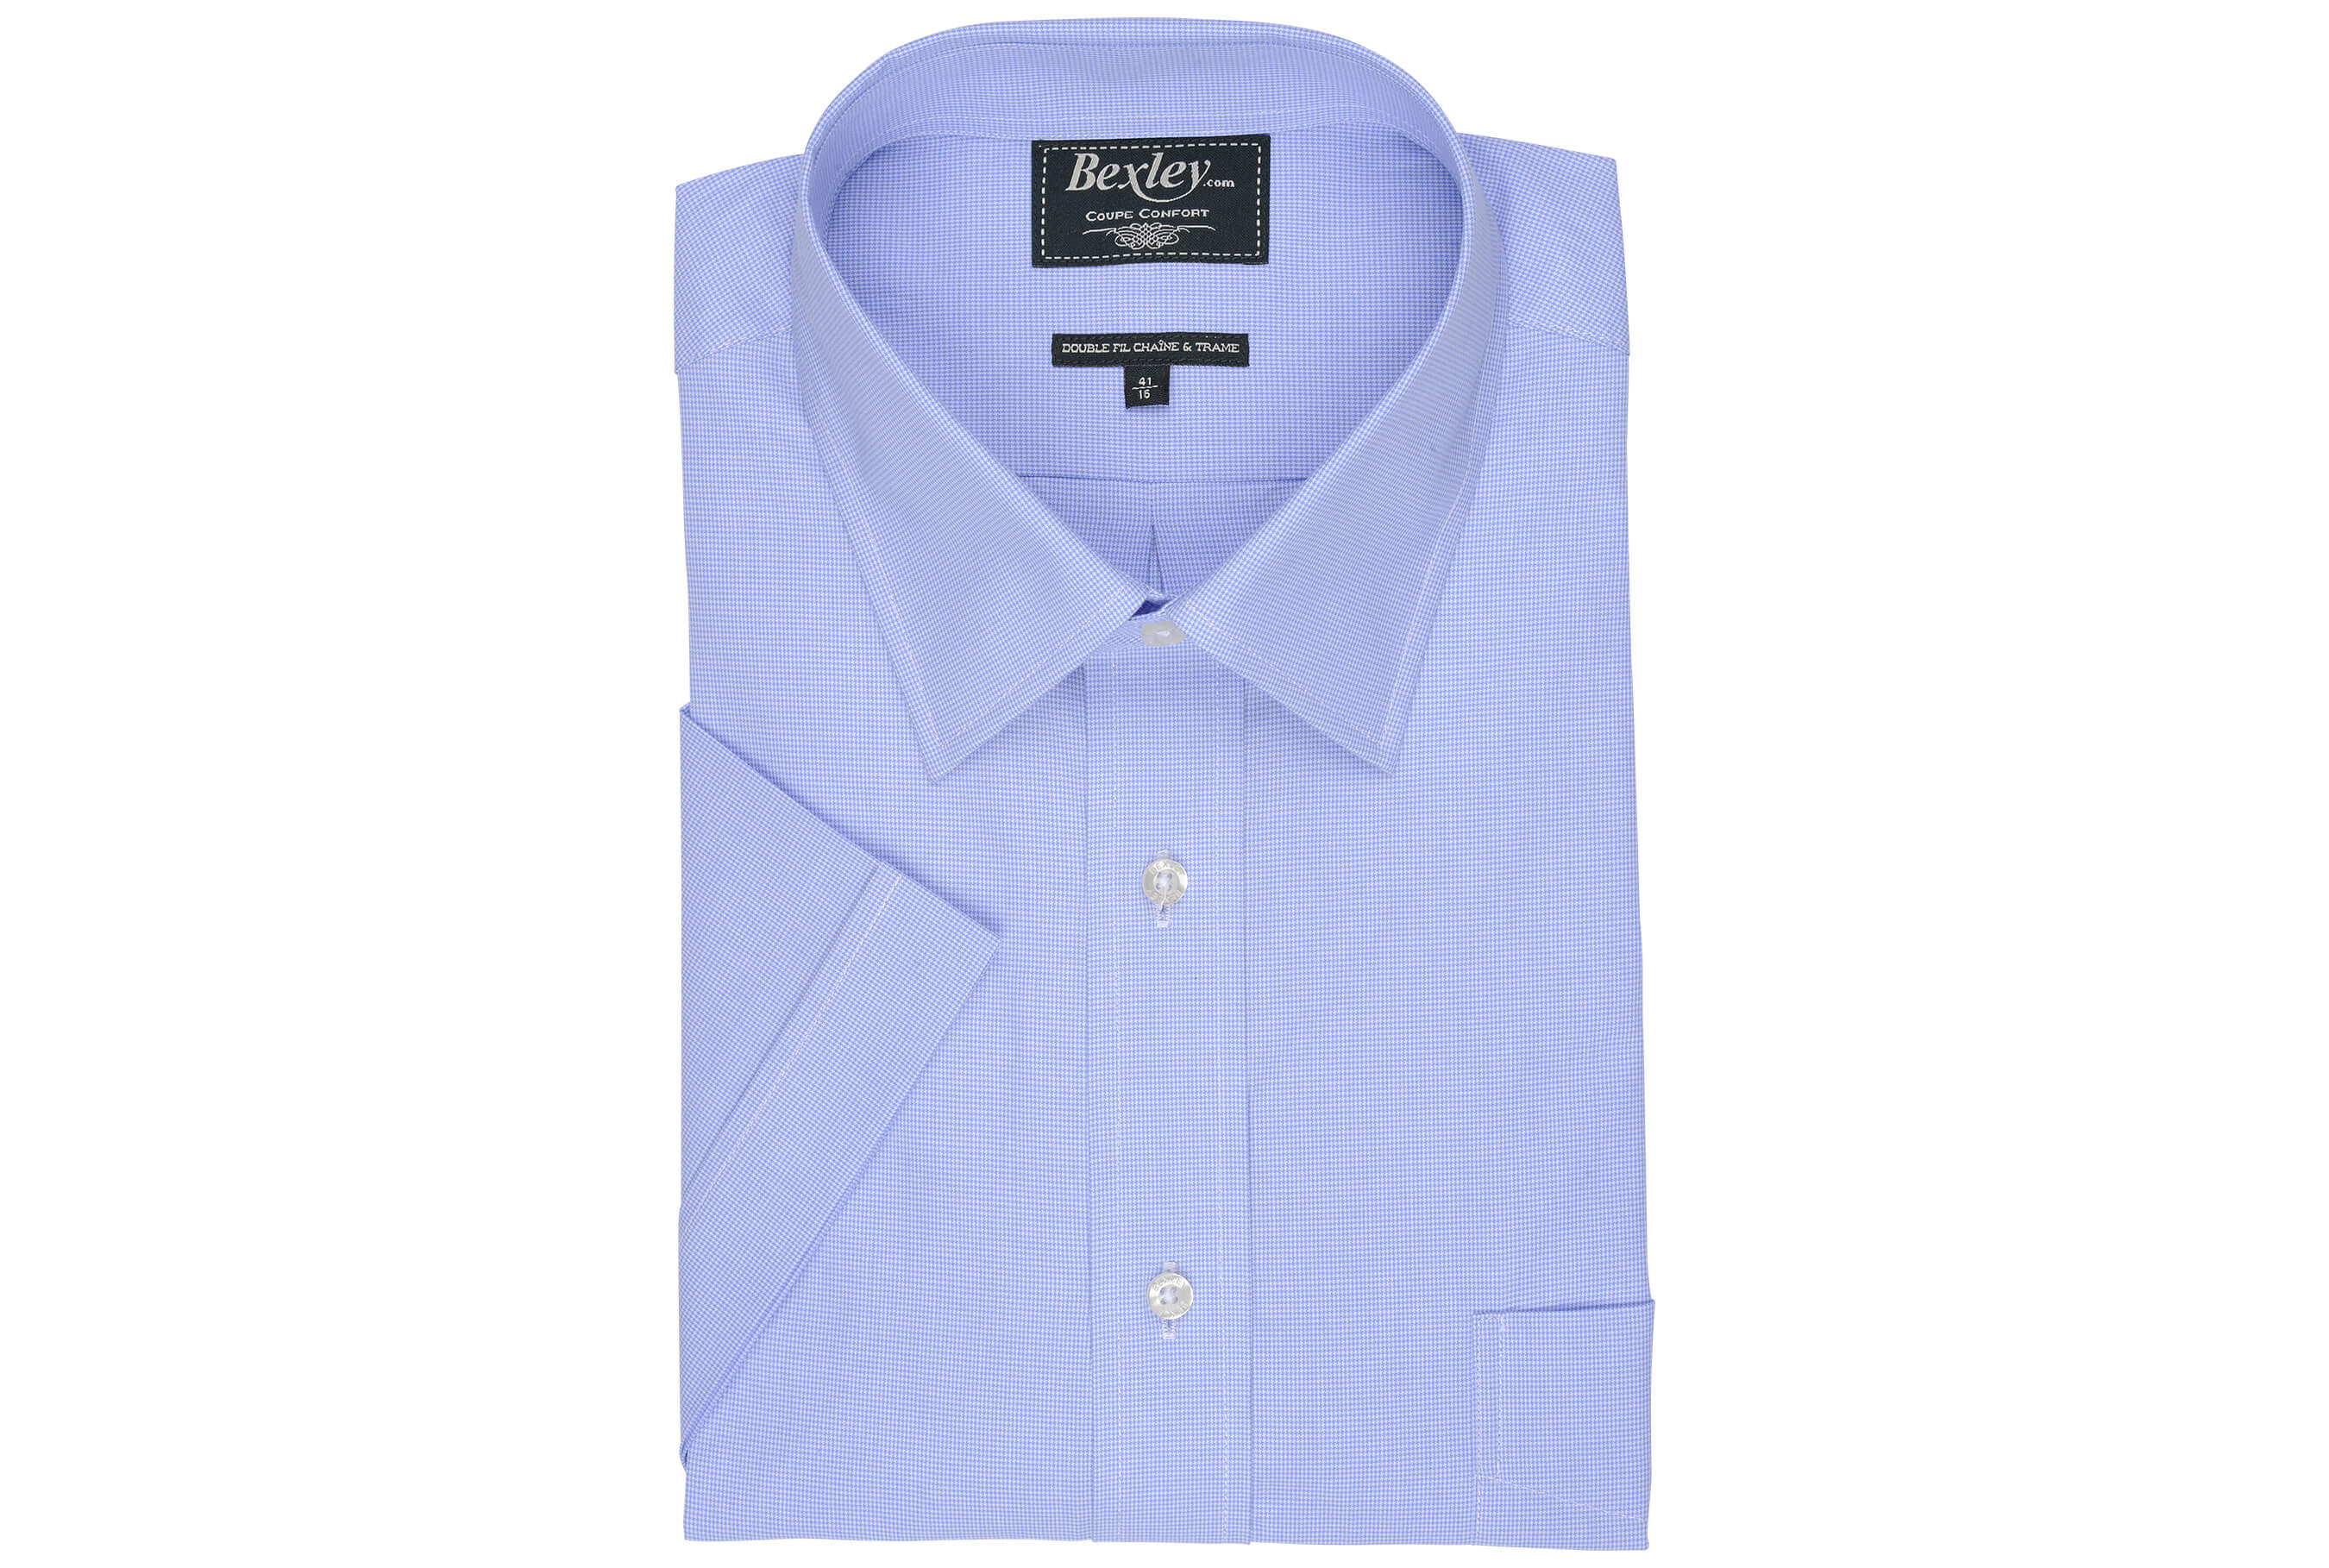 bexley chemise homme 100% coton, bleu et blanc, manches courtes